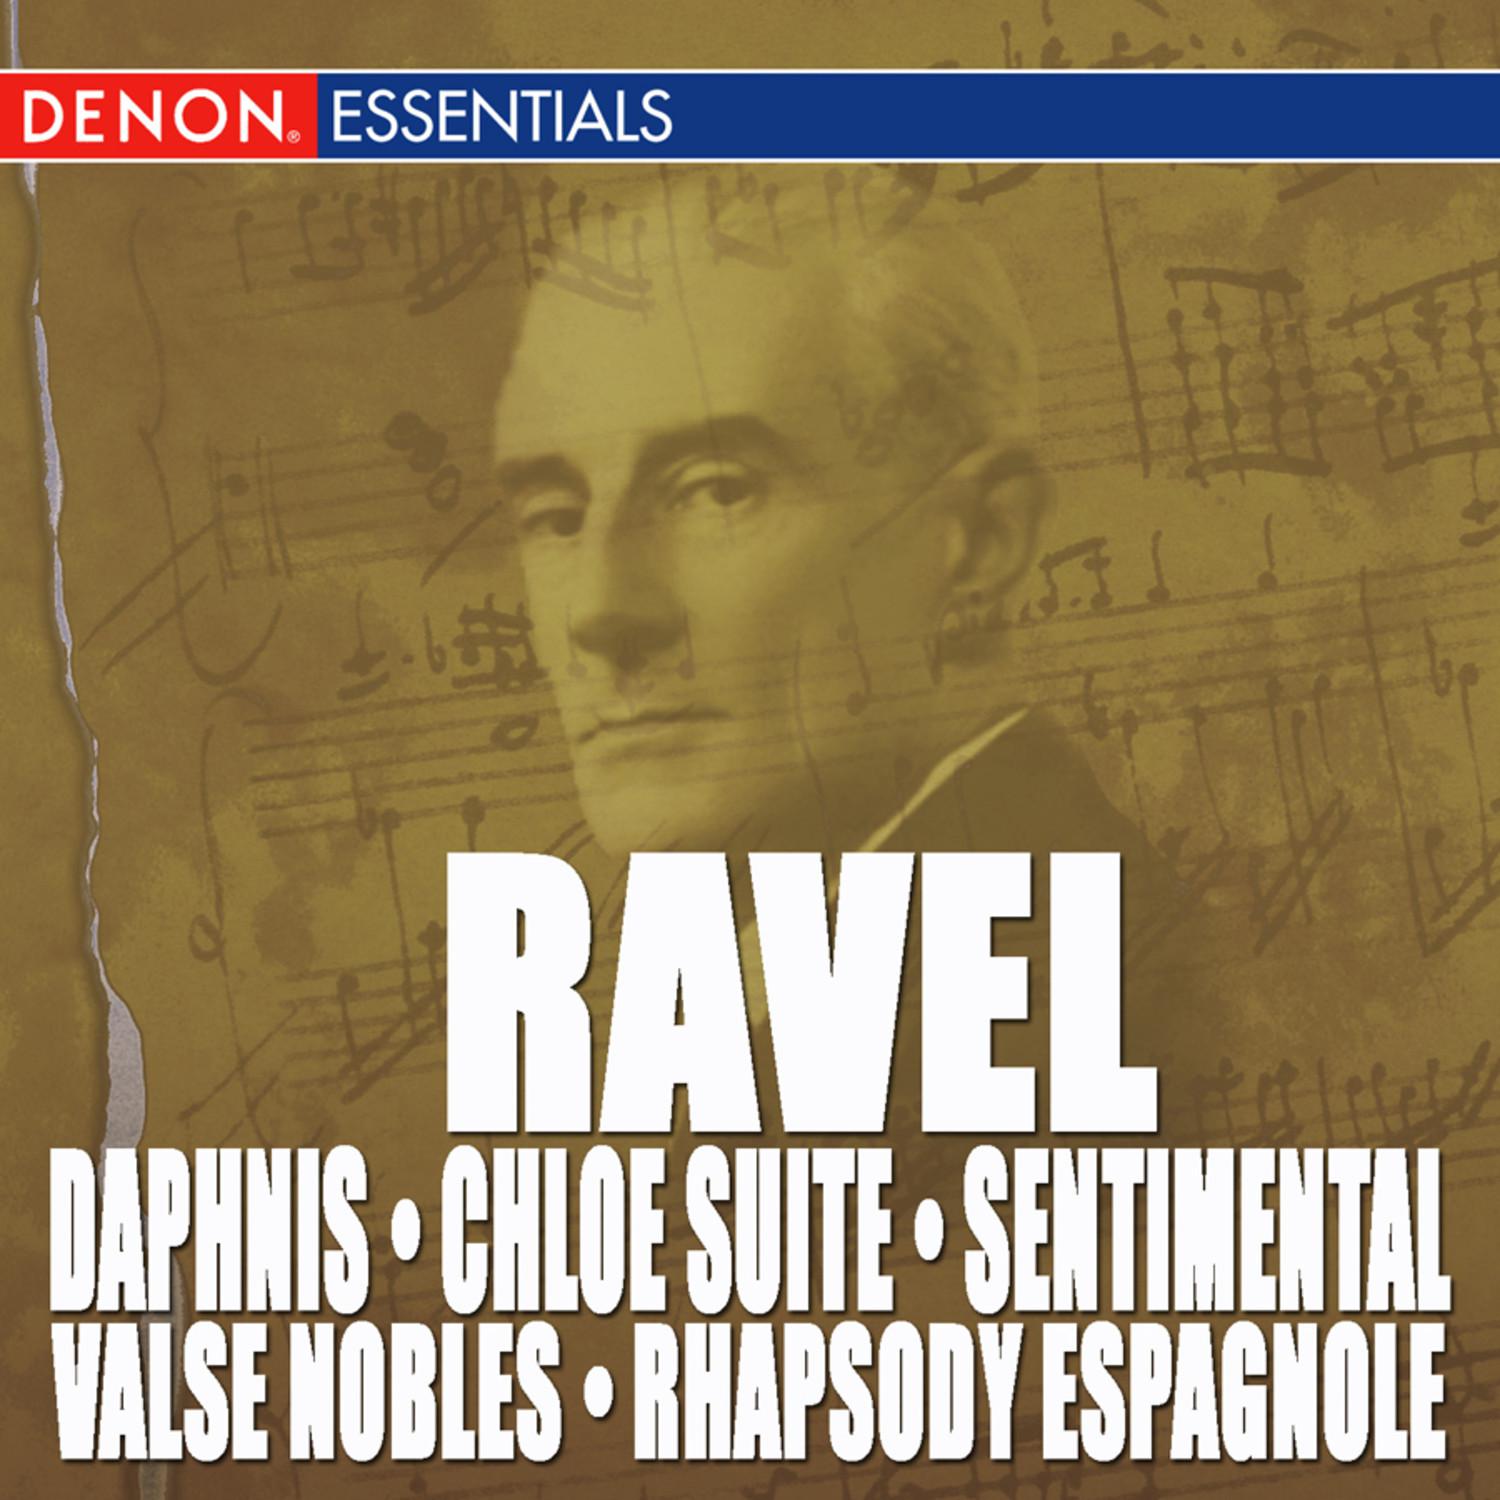 Ravel: Daphnis & Chloe Suite, Valse Nobles and Sentimental & Rhapsody Espagnole